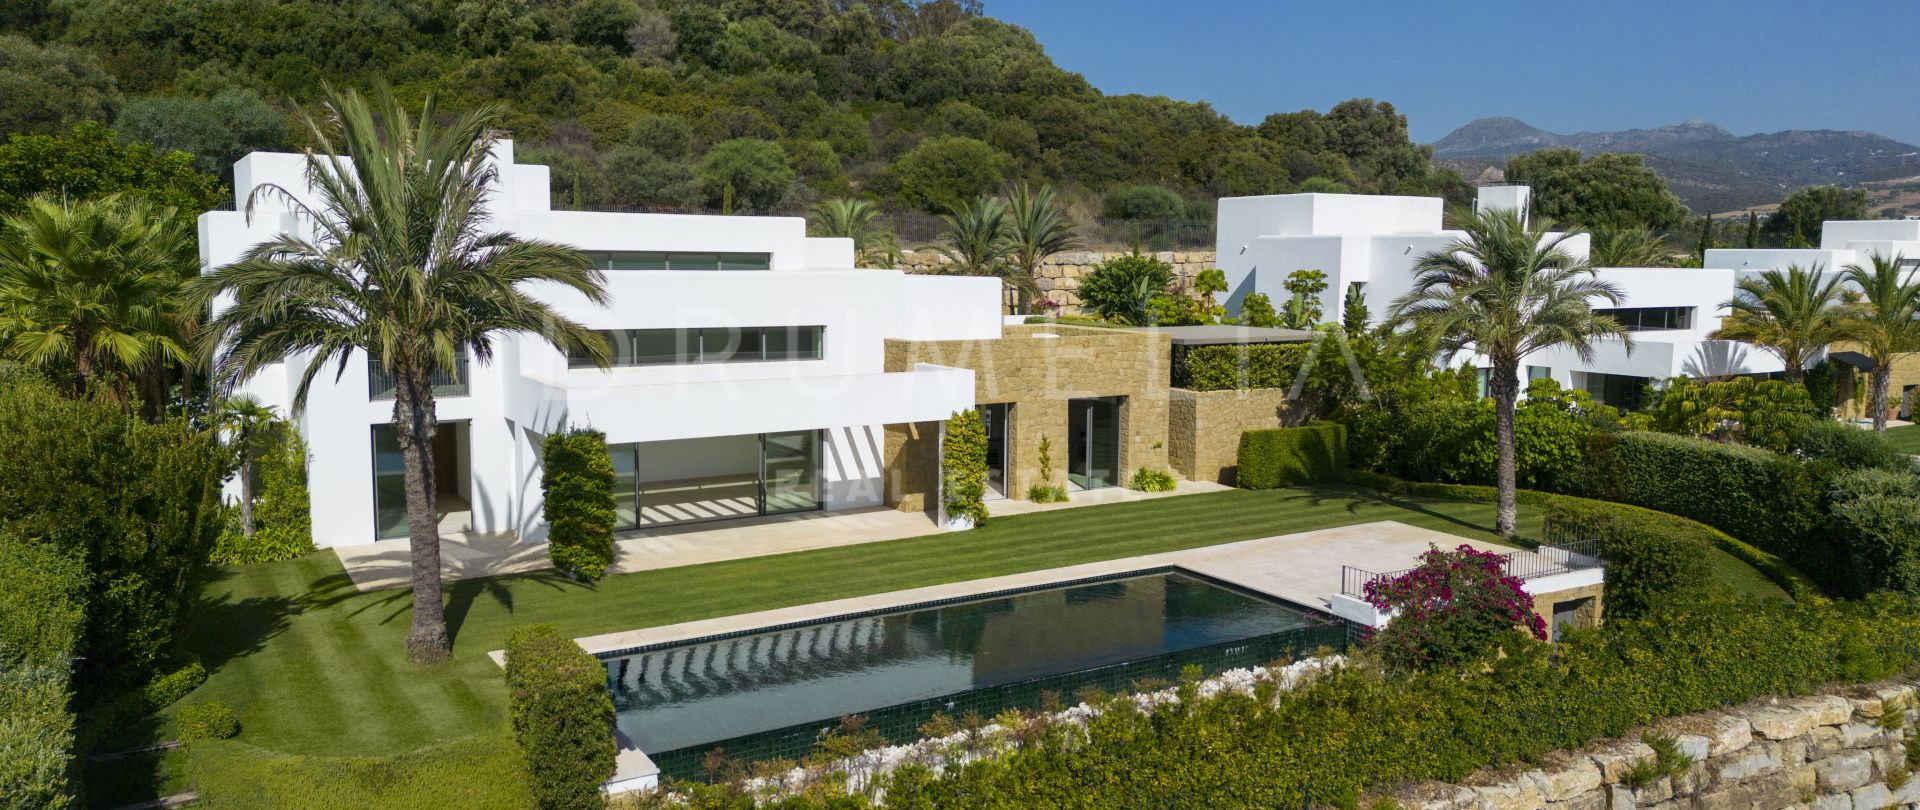 Brandneue Luxus-Golfvilla in erster Reihe mit herrlichem Blick und Charme im Ibiza-Stil, Finca Cortesin, Casares.